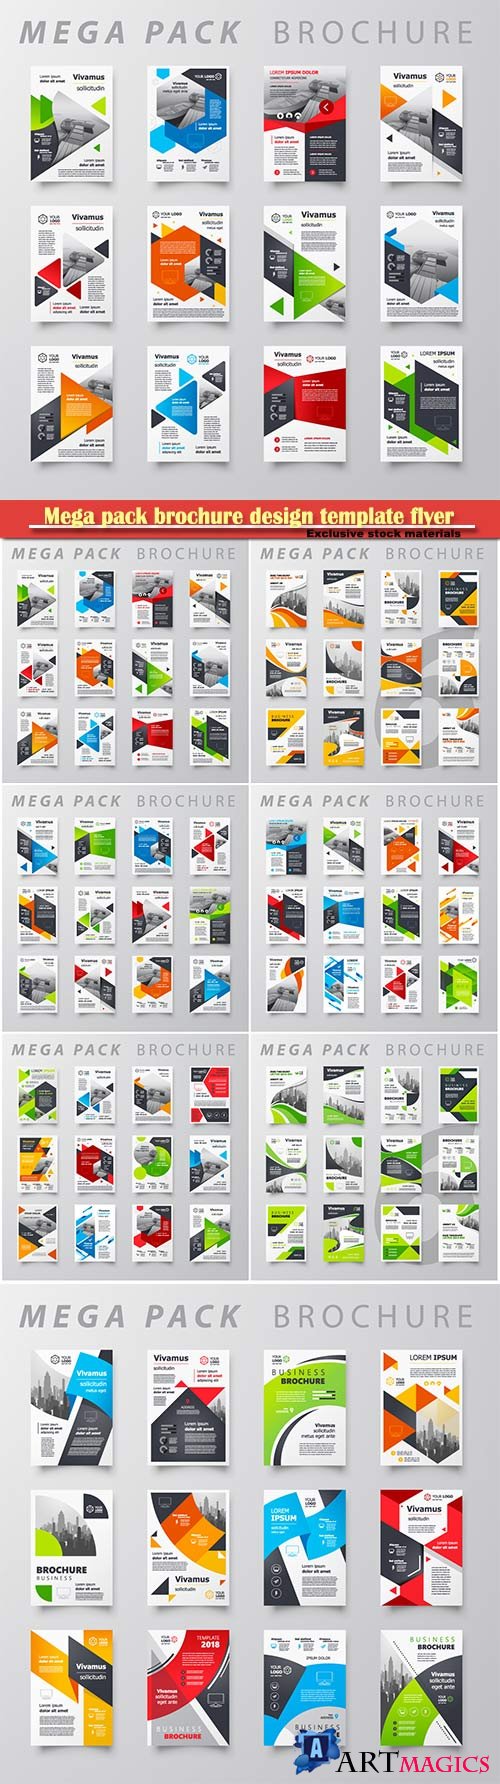 Mega pack brochure design template flyer vector set